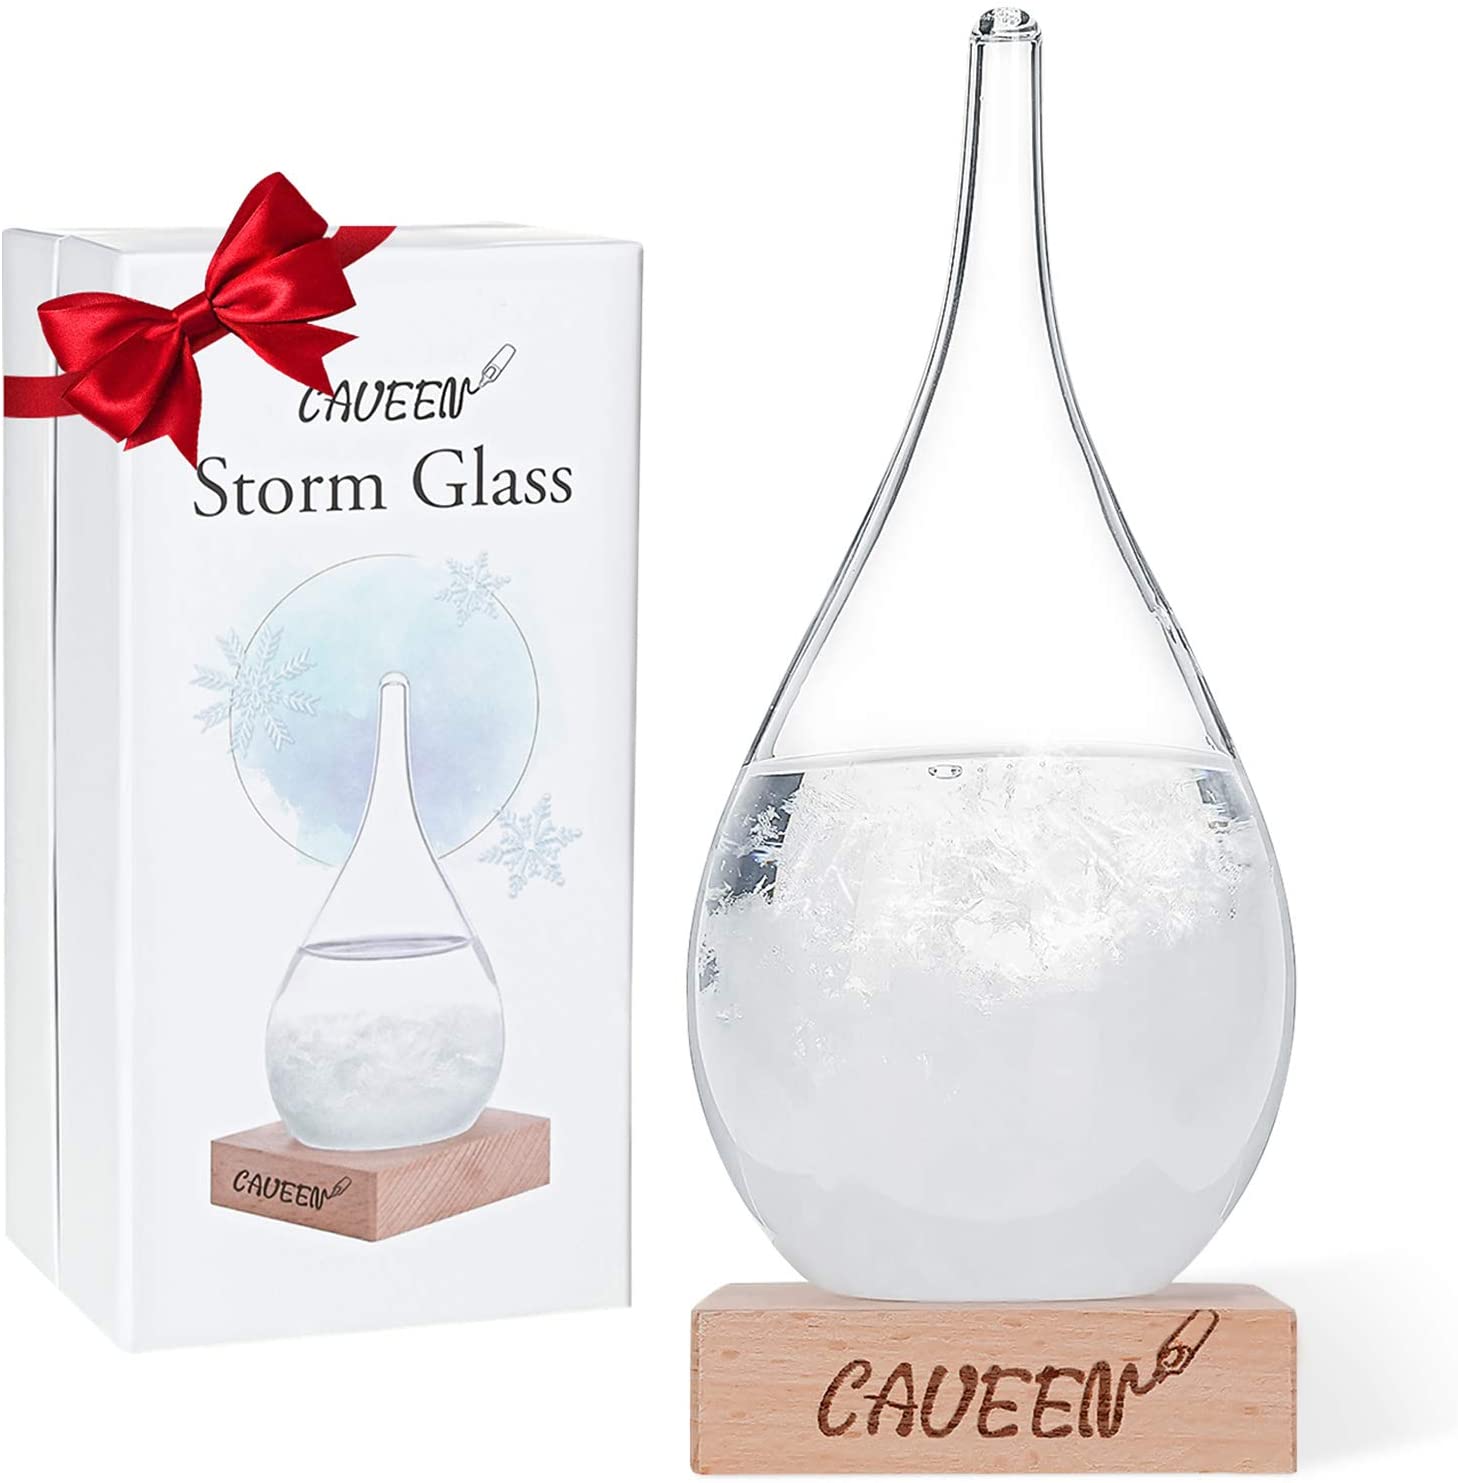 Bild zu CAVEEN tropfenförmiges Wetterglas zur Wettervorhersage für 14,94€